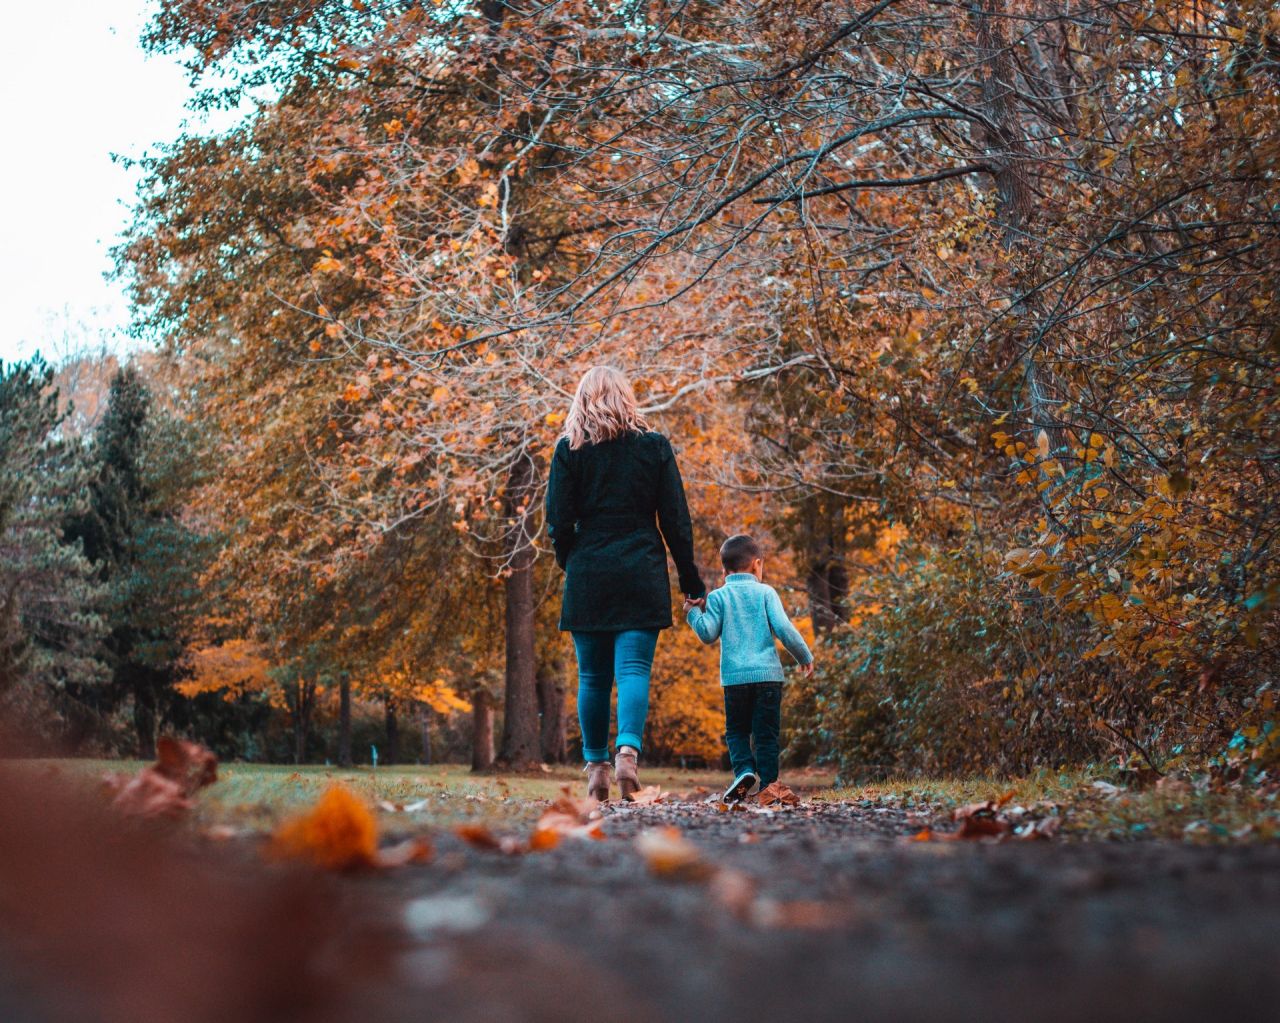 Vrouw en kind op wandel in een herfstig bos